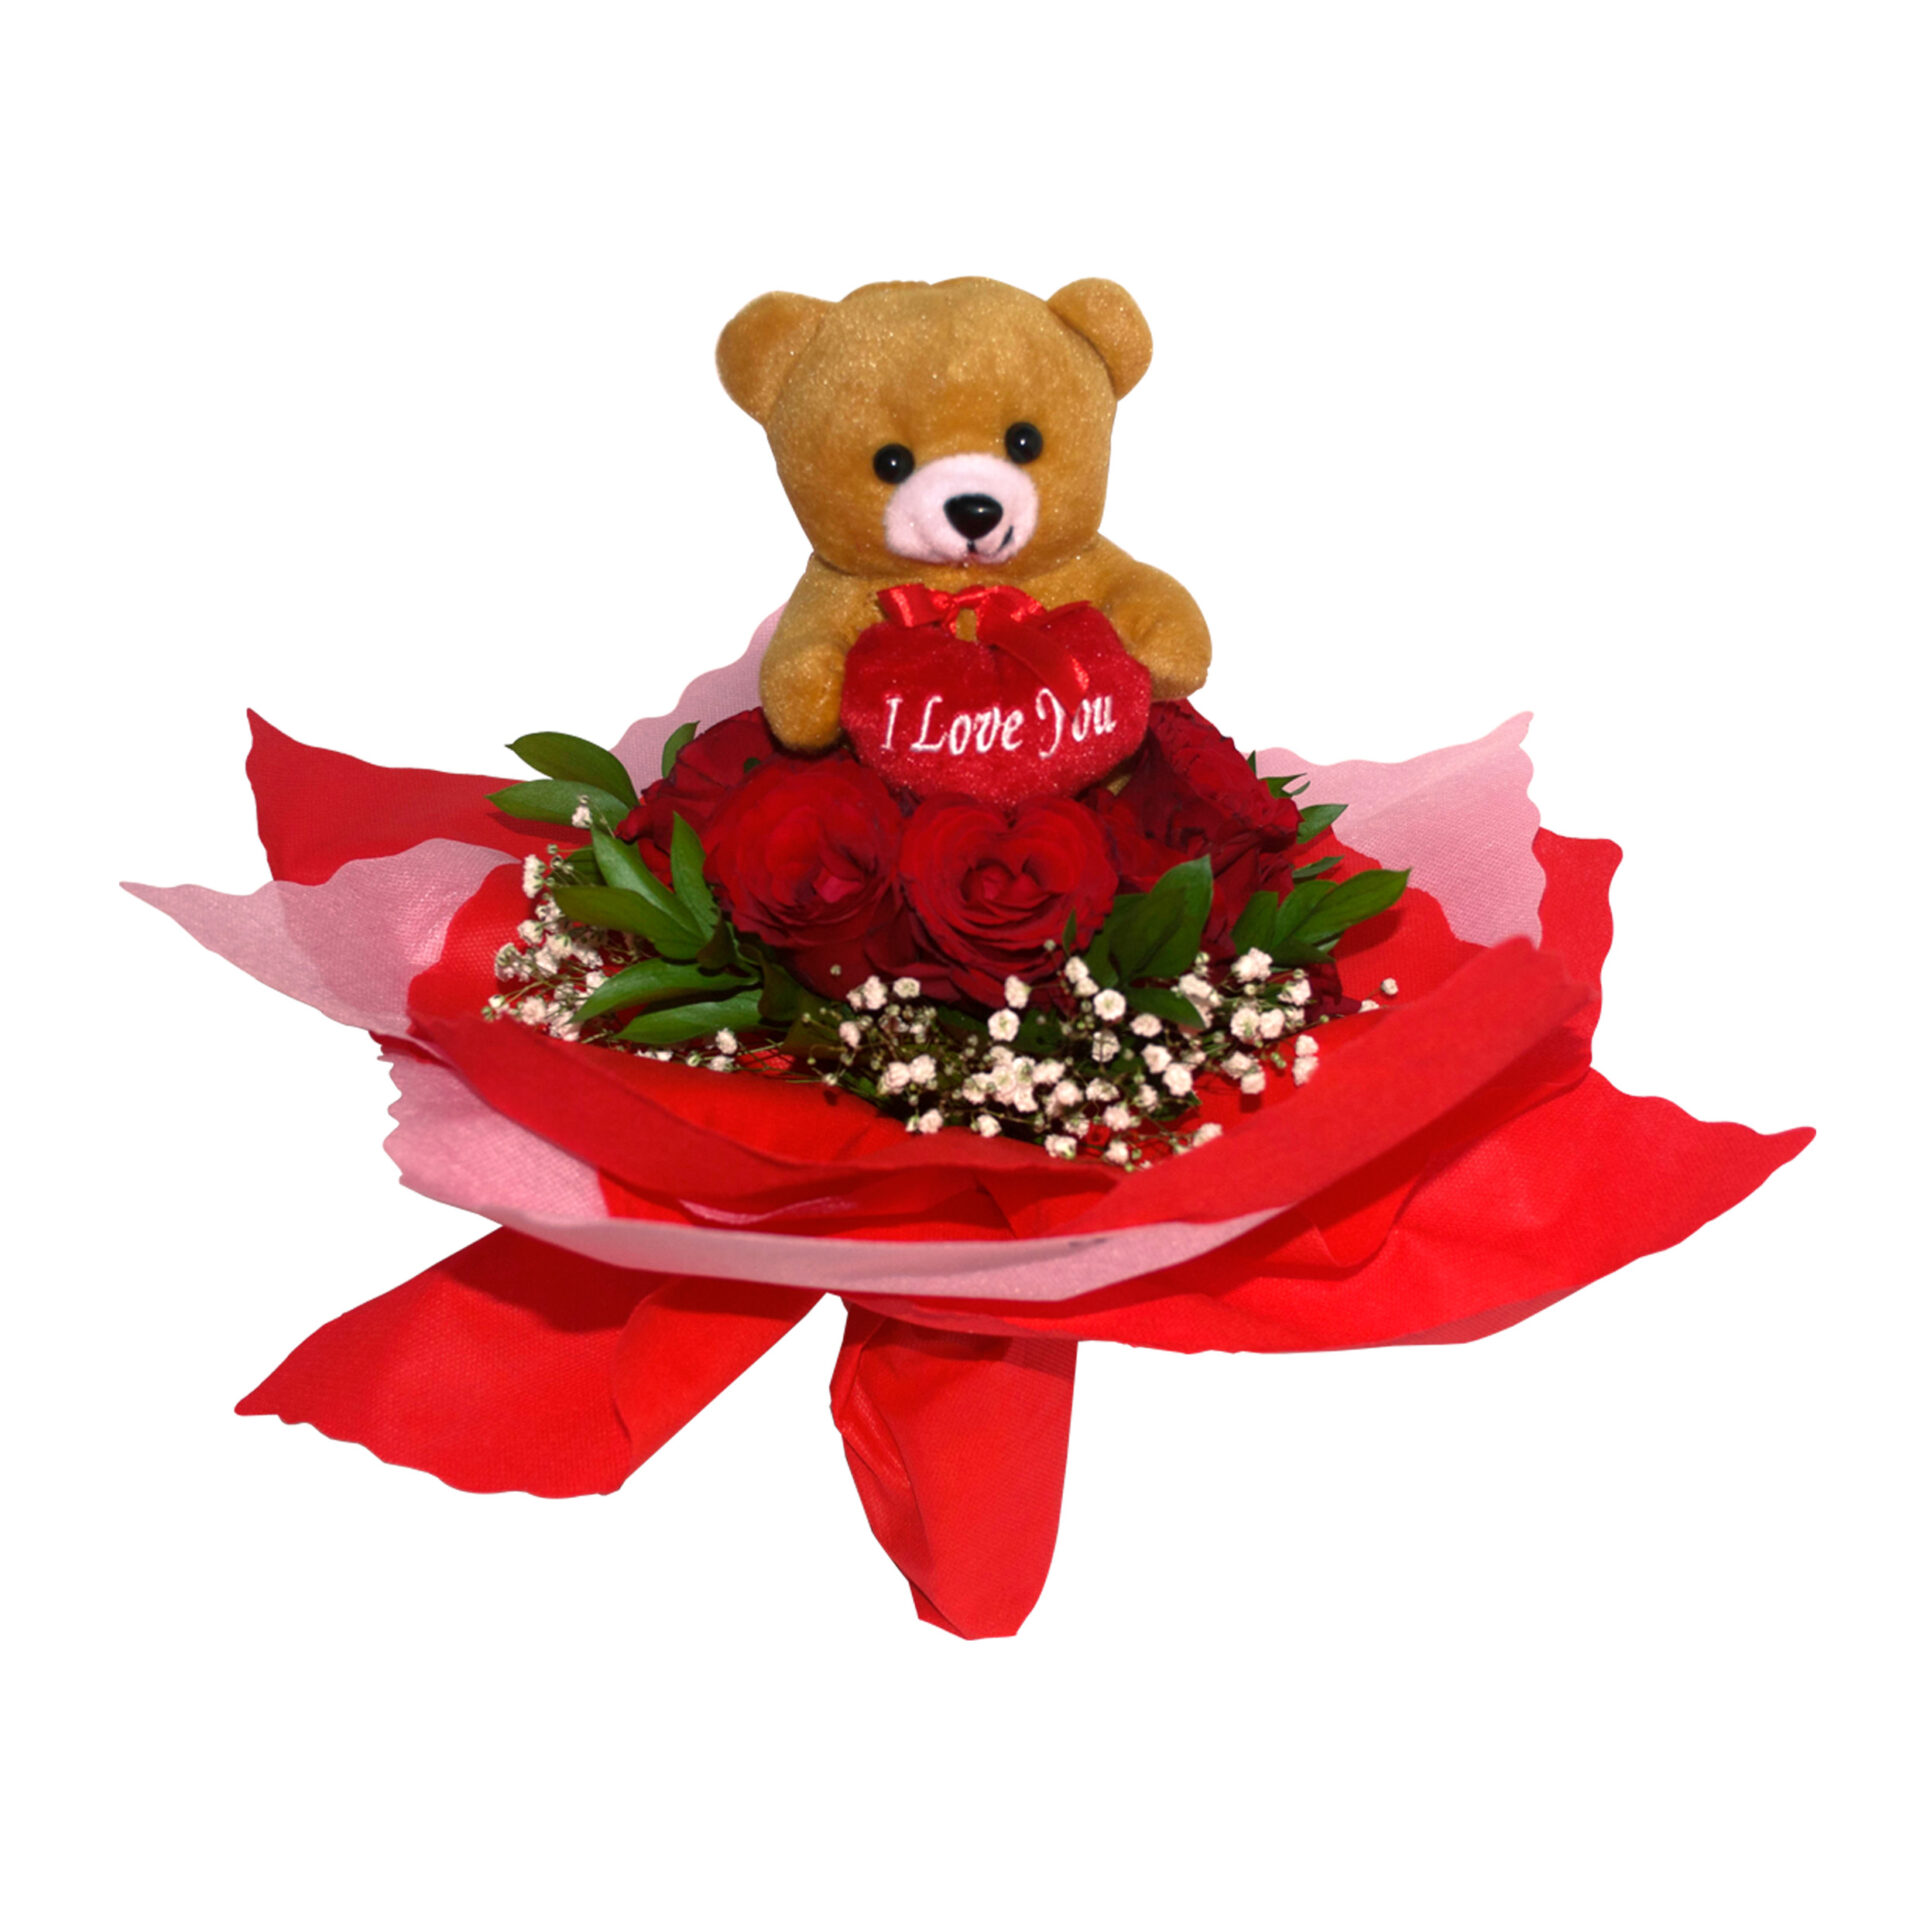  Toko  Bunga Valentine Di  Tangerang  081212648999 Pre 